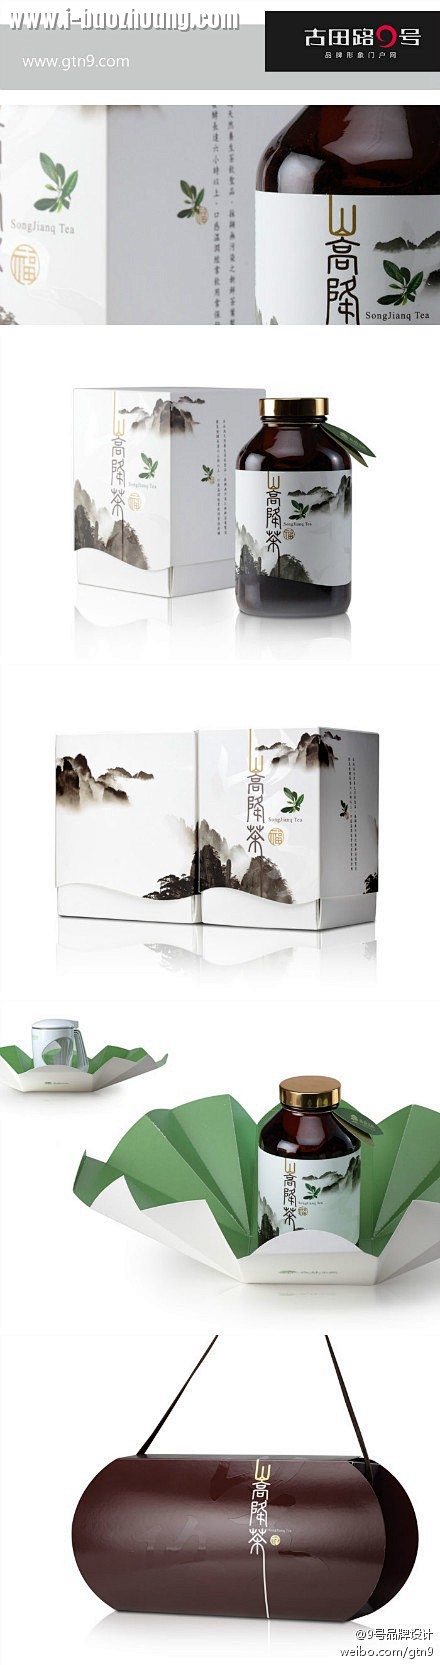 台湾山高降茶 包装设计